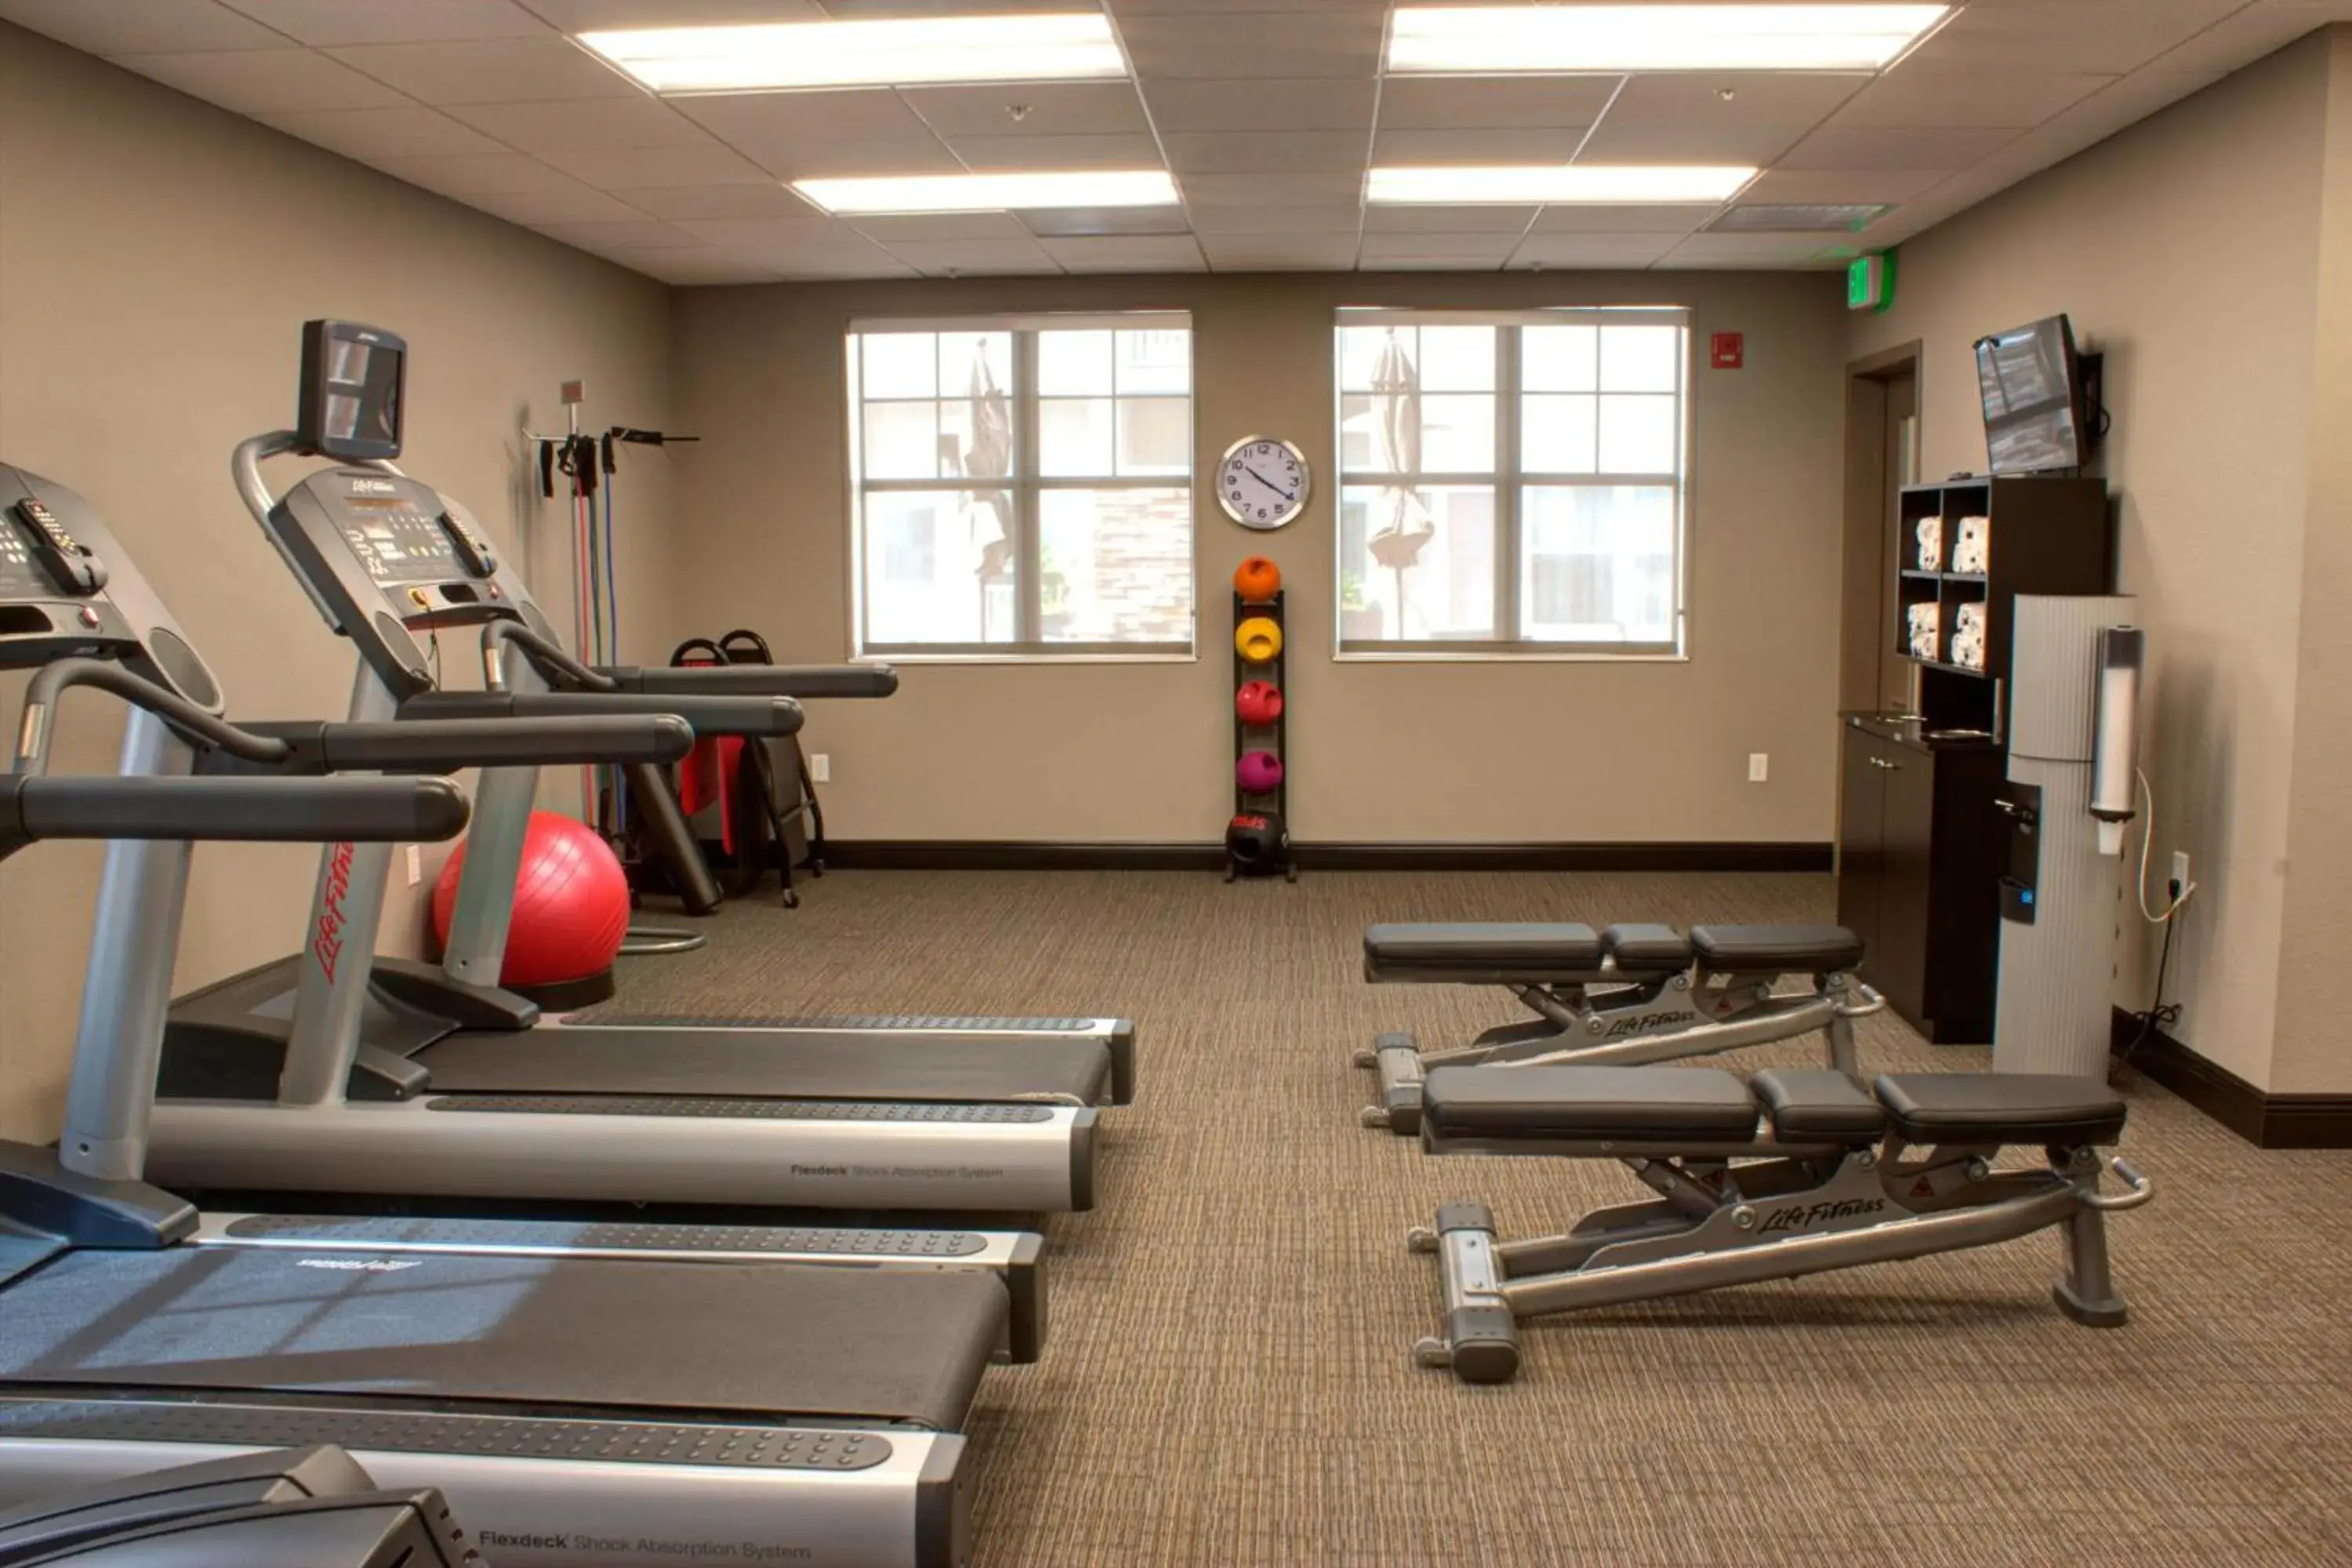 Fitness centre/facilities, Fitness Center/Facilities in Residence Inn by Marriott Sebring